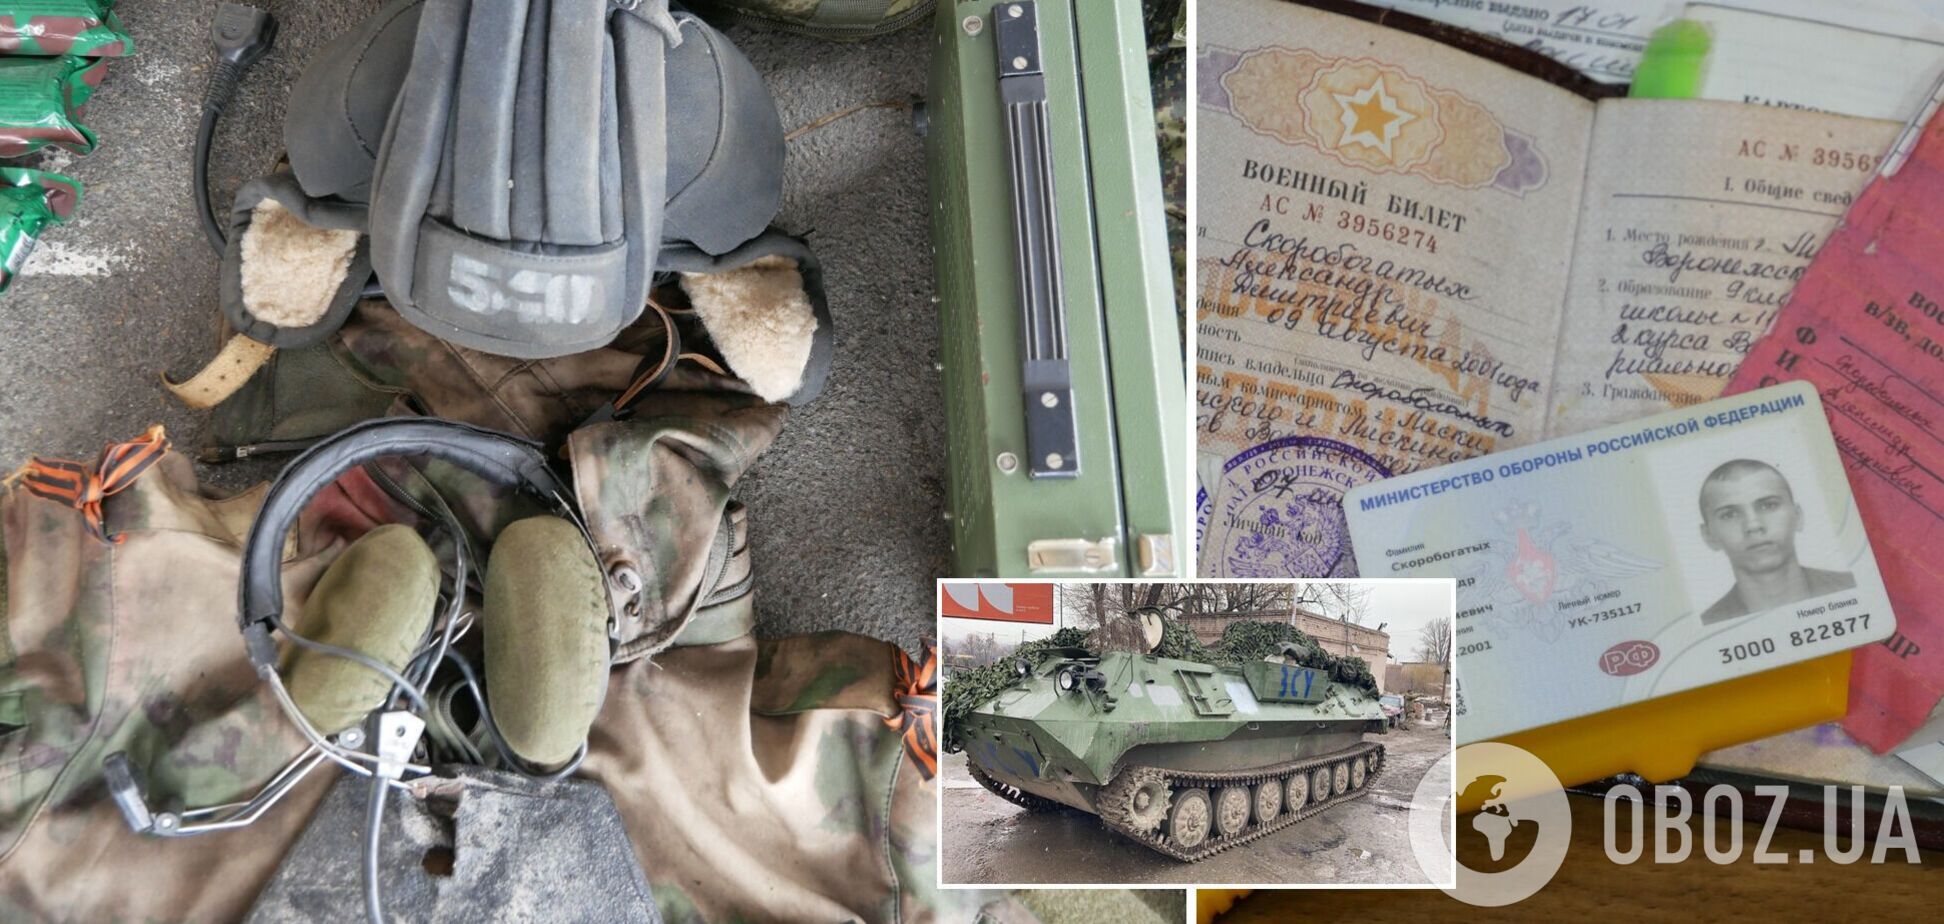 Украинские разведчики захватили командно-штабную машину РФ с документами. Детали и фото